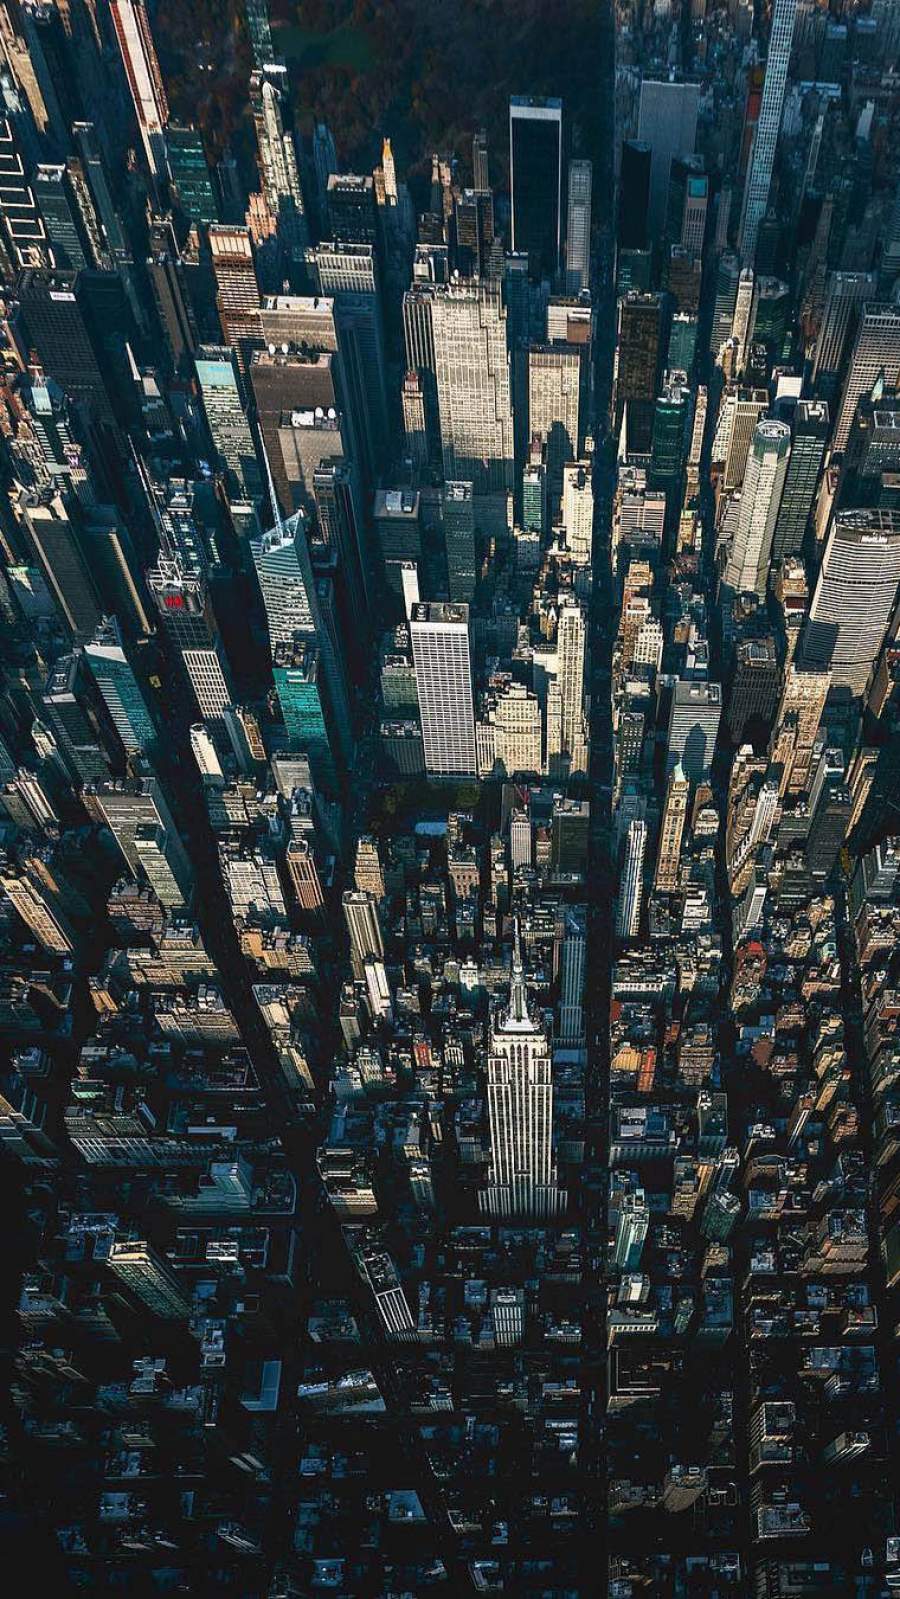 New York Aerial View iPhone Wallpaper Wallpaper, iPhone Wallpaper